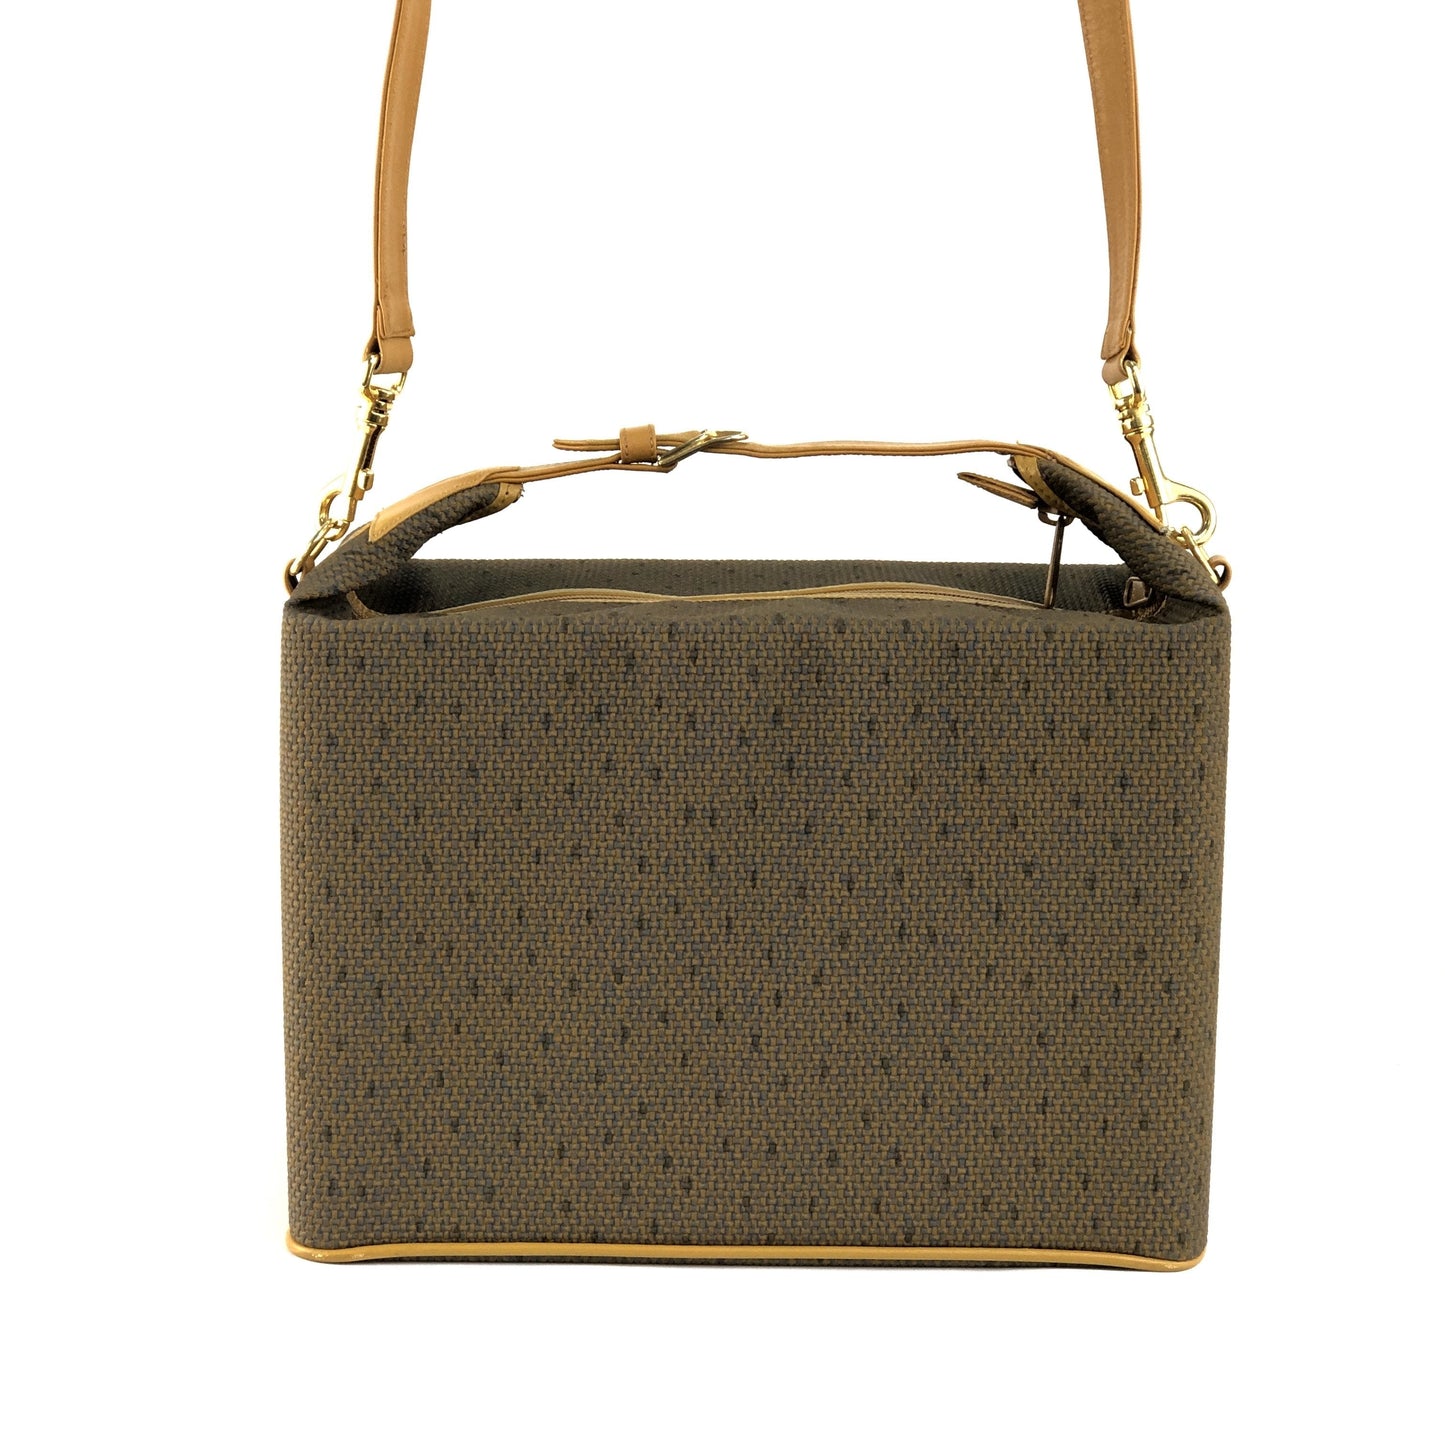 Yves Saint Laurent shoulder bag YSL vanity bag handbag box brown vintage v6ayth